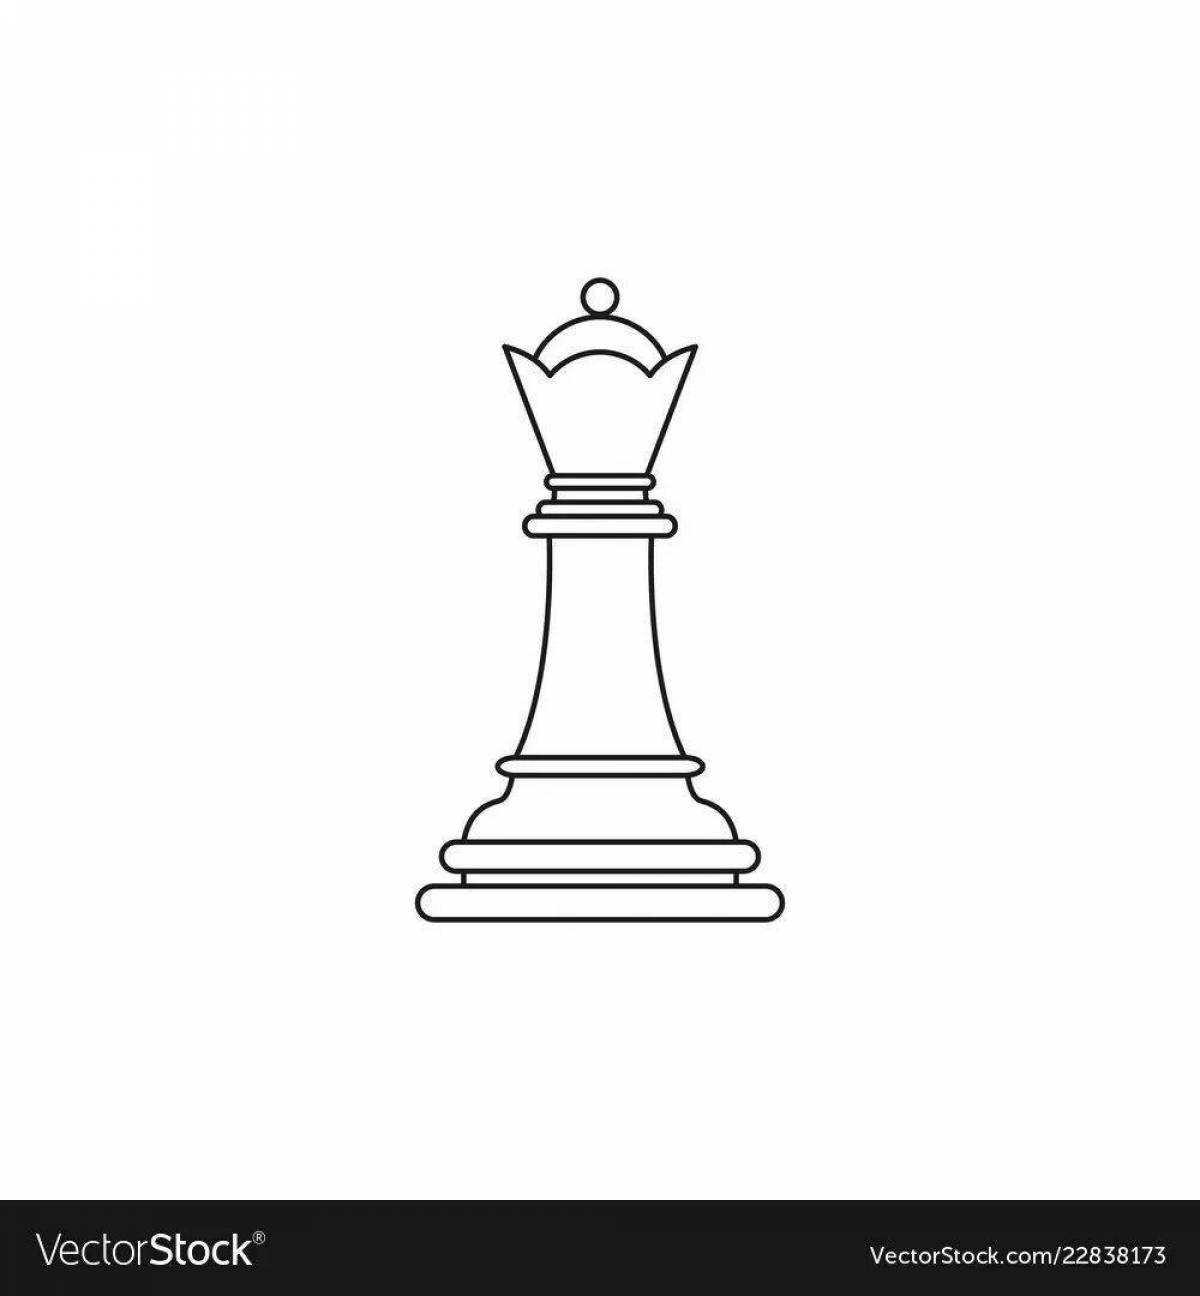 Chess queen #4